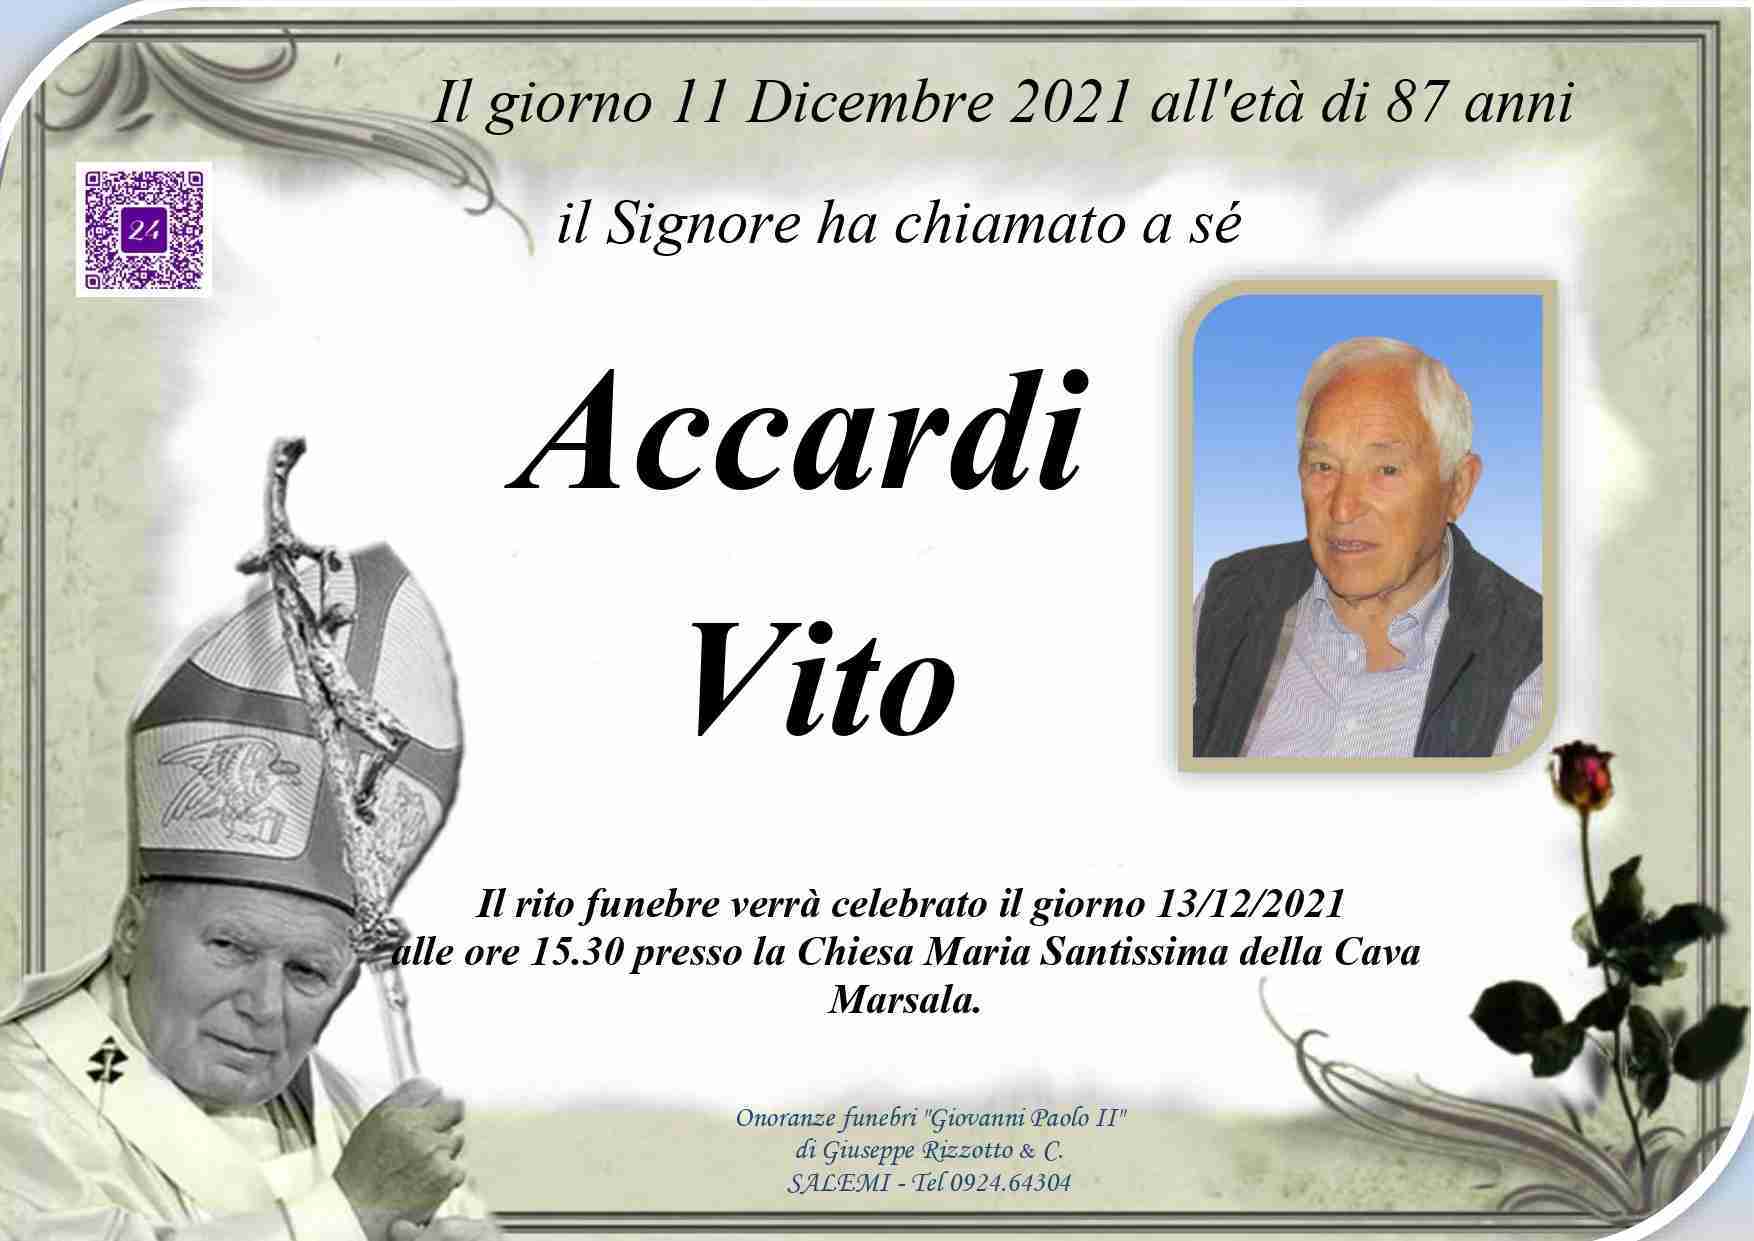 Vito Accardi